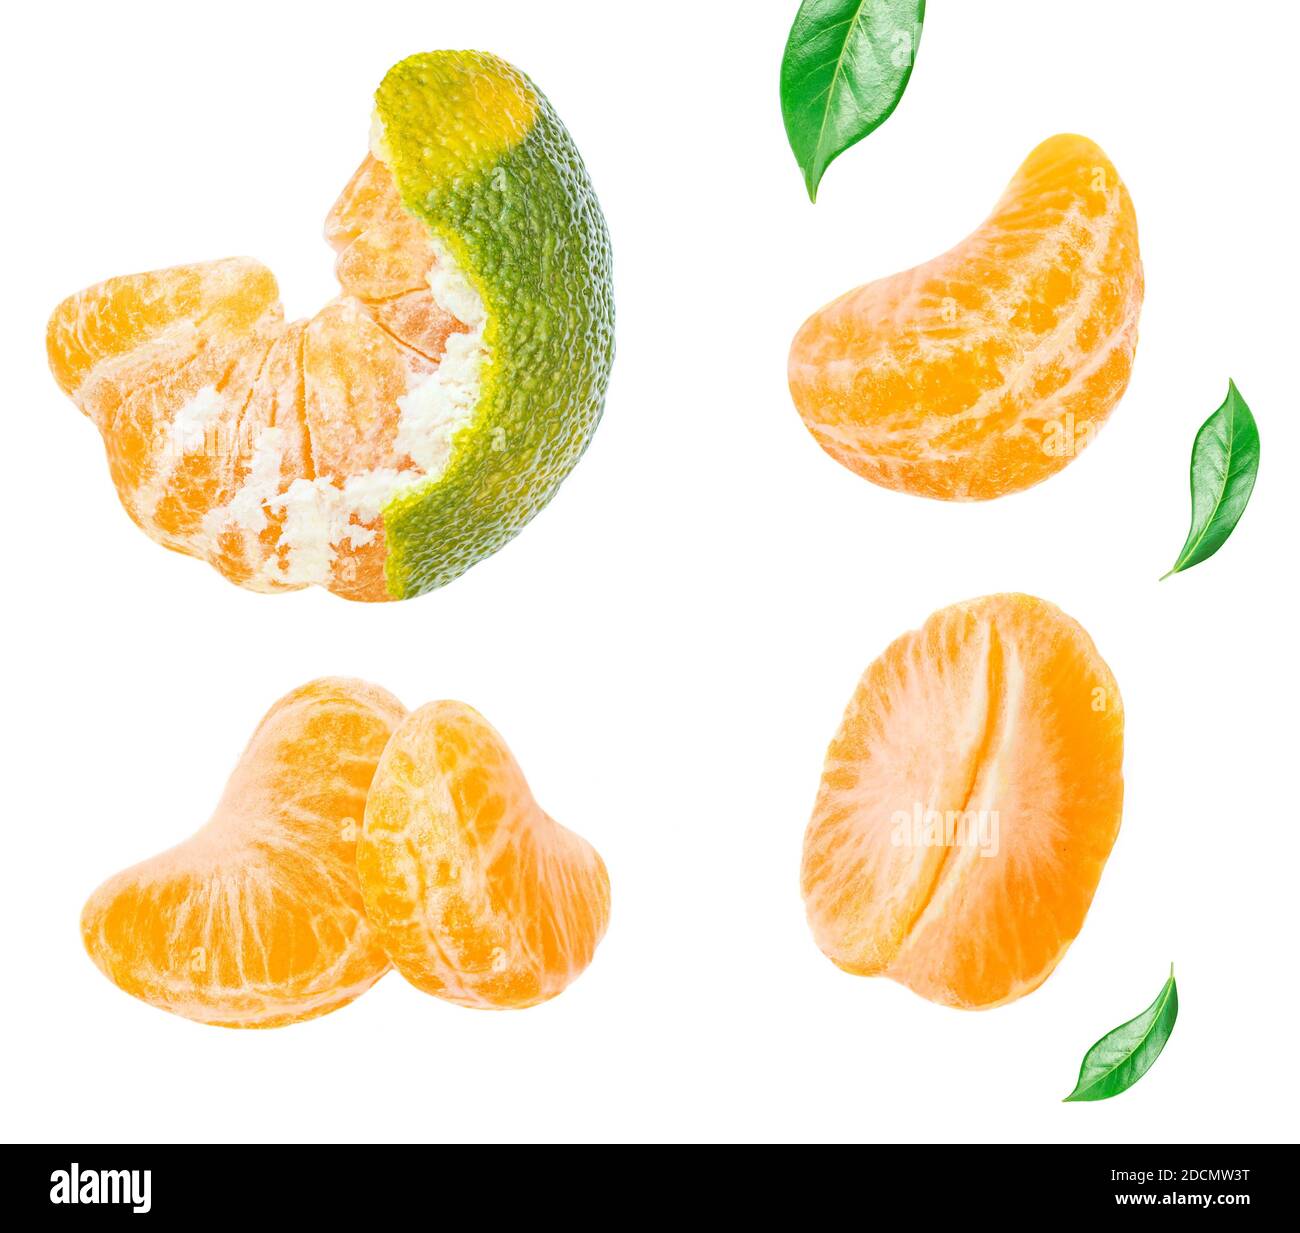 Mise en page créative faite de Tangerines avec des feuilles et des tranches vertes isolées sur fond blanc. Mandarines, Clementine fruit vue de dessus. Pose à plat Banque D'Images